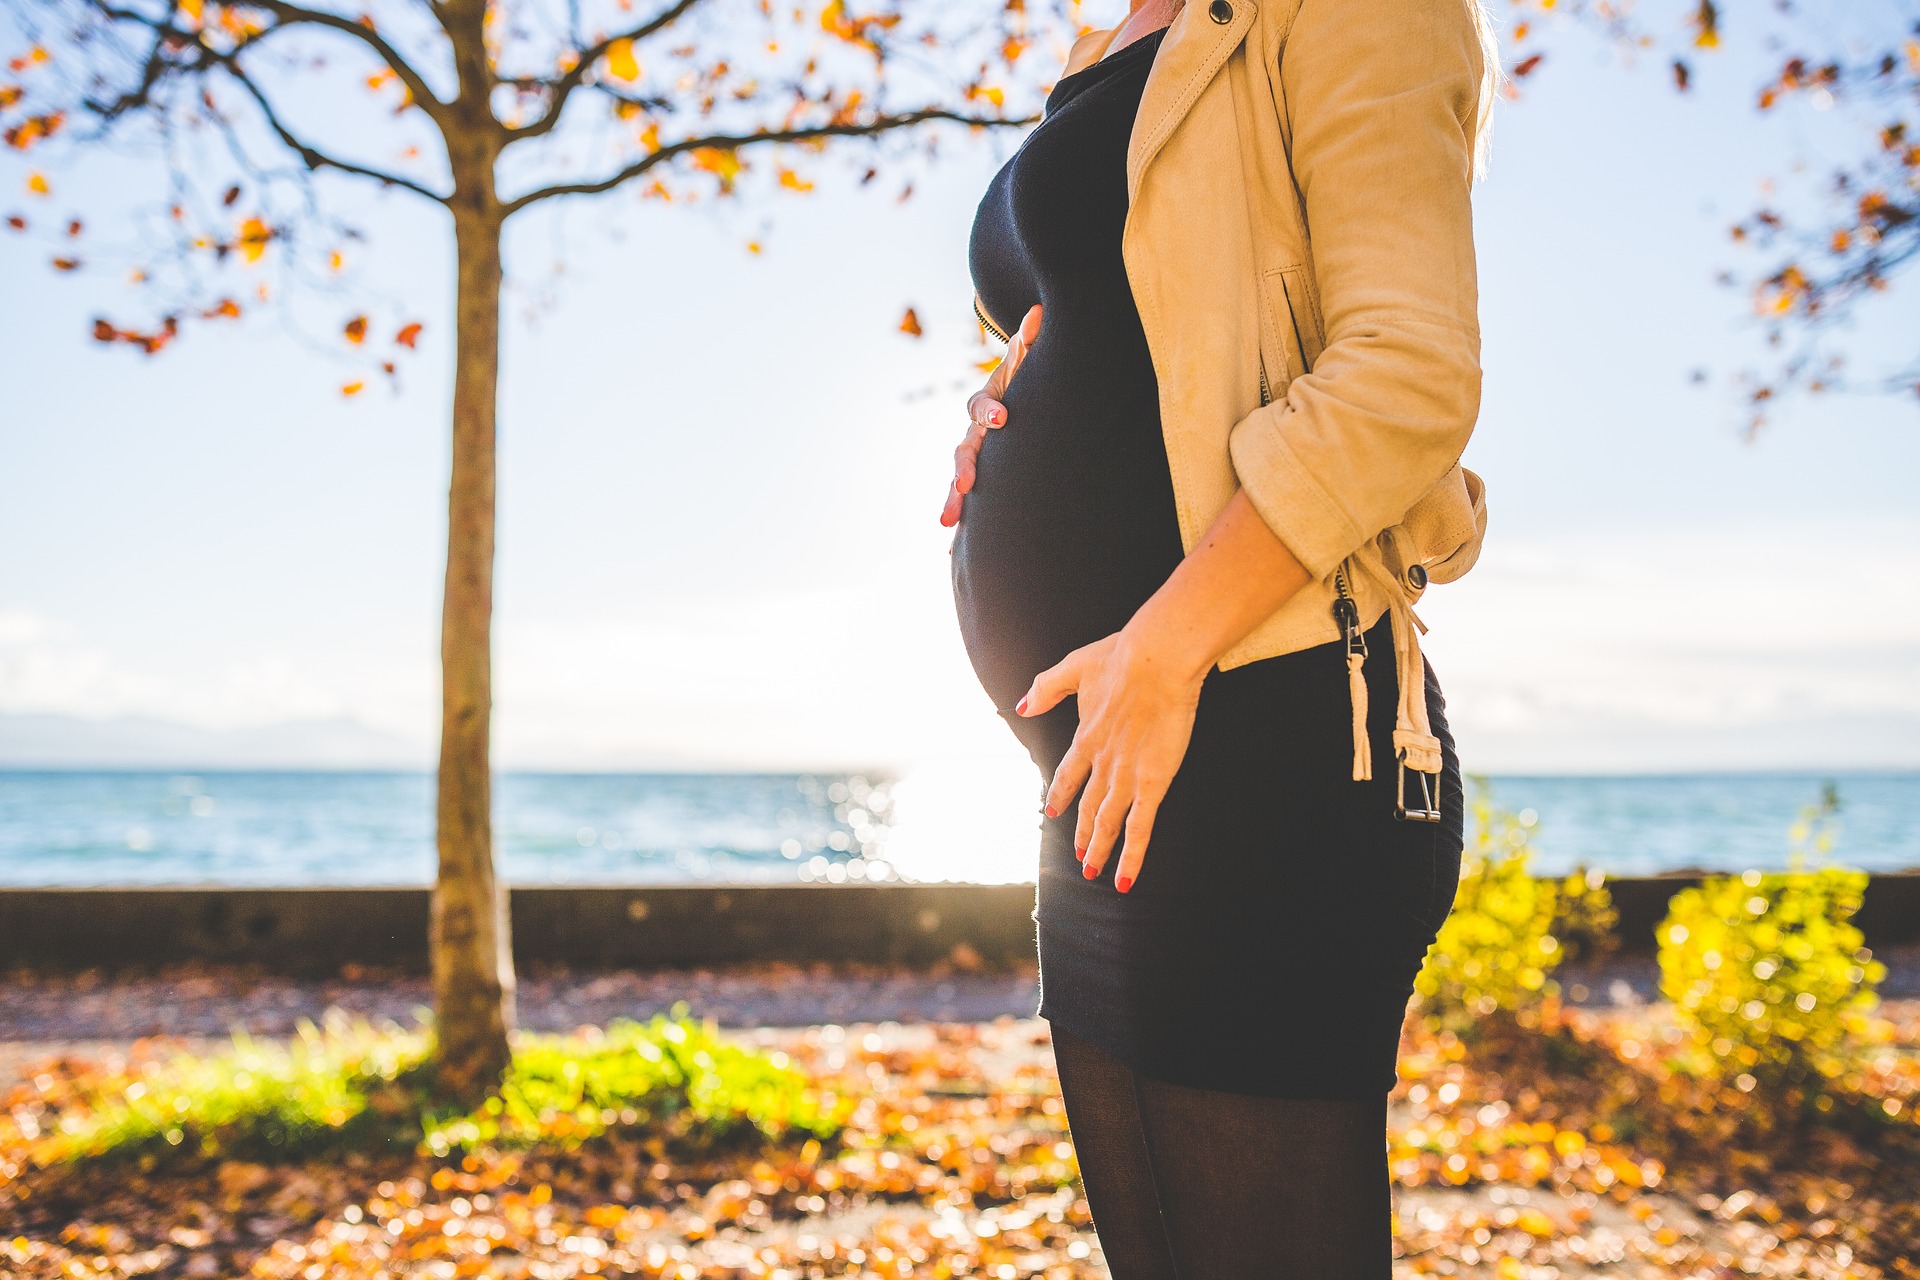 Les femmes enceintes doivent-elle suivre un régime alimentaire stricte ?